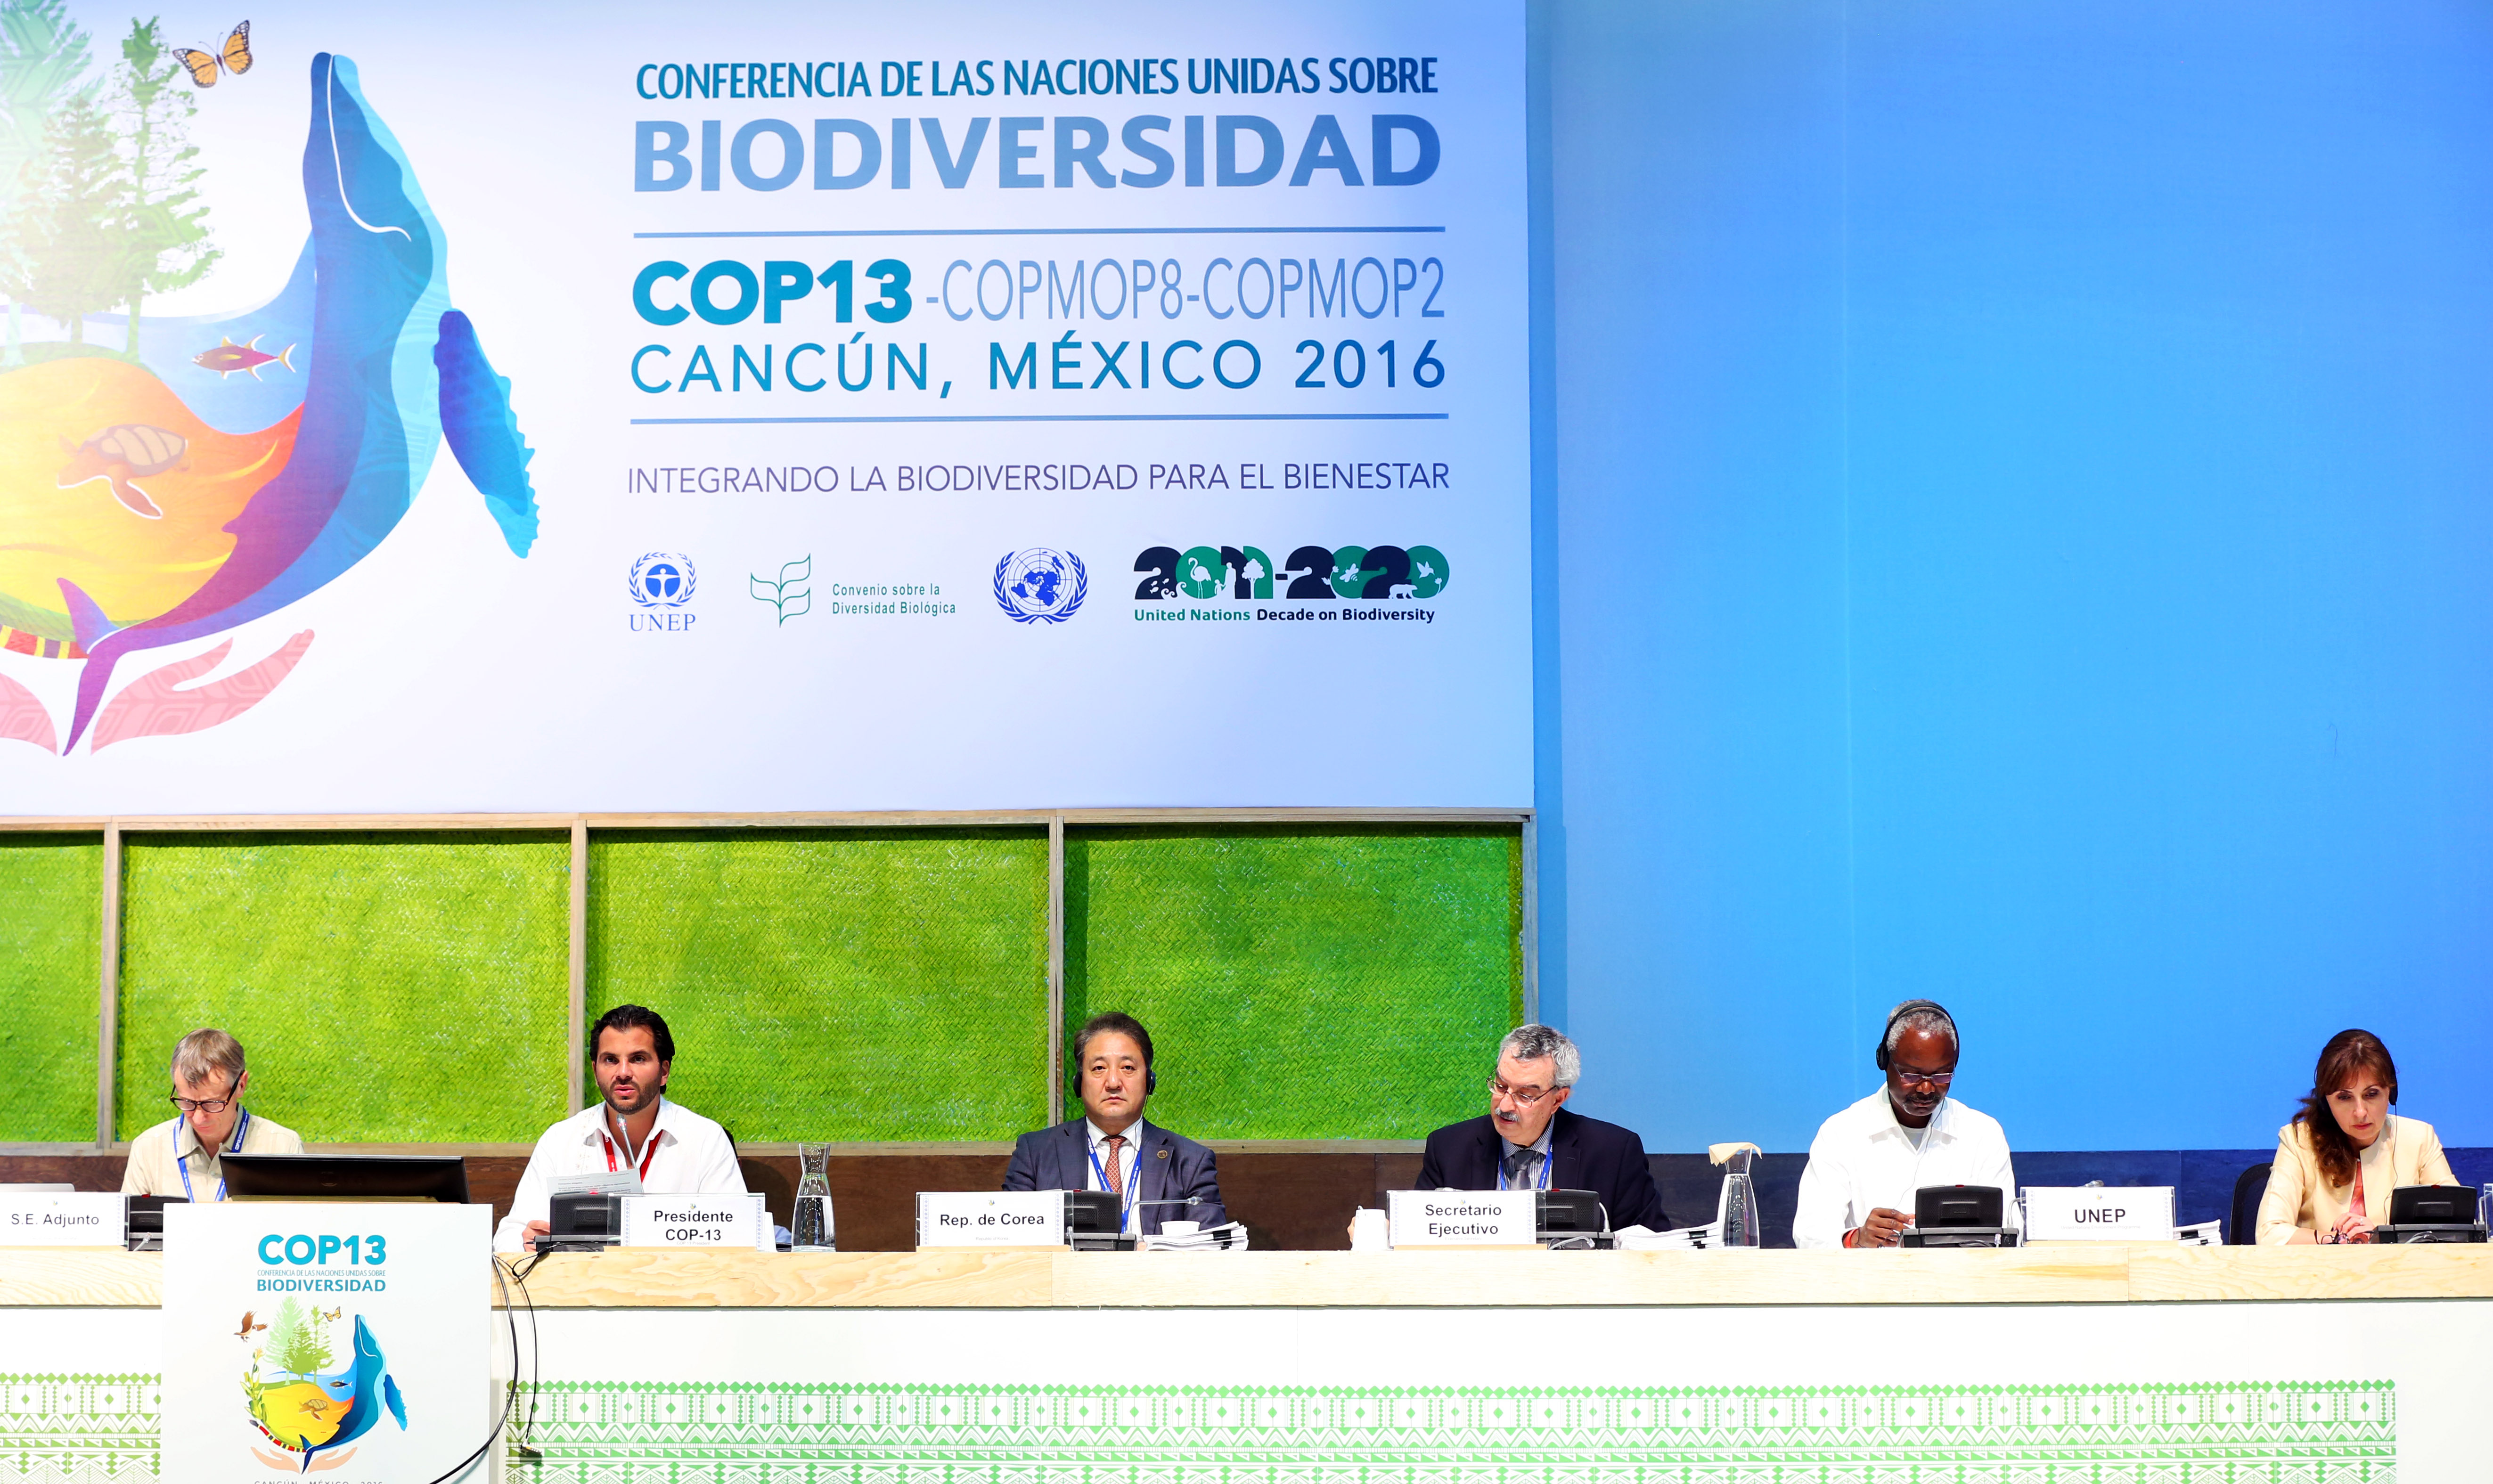 Del 4 al 17 de diciembre se está llevando a cabo la 13 Conferencia de las Partes (COP) del Convenio sobre Diversidad Biológica (CBD) en Cancún, México, en donde se reúnen los países parte, así como los principales actores relacionados con la gestión, uso sostenible y conservación de la biodiversidad a nivel mundial.